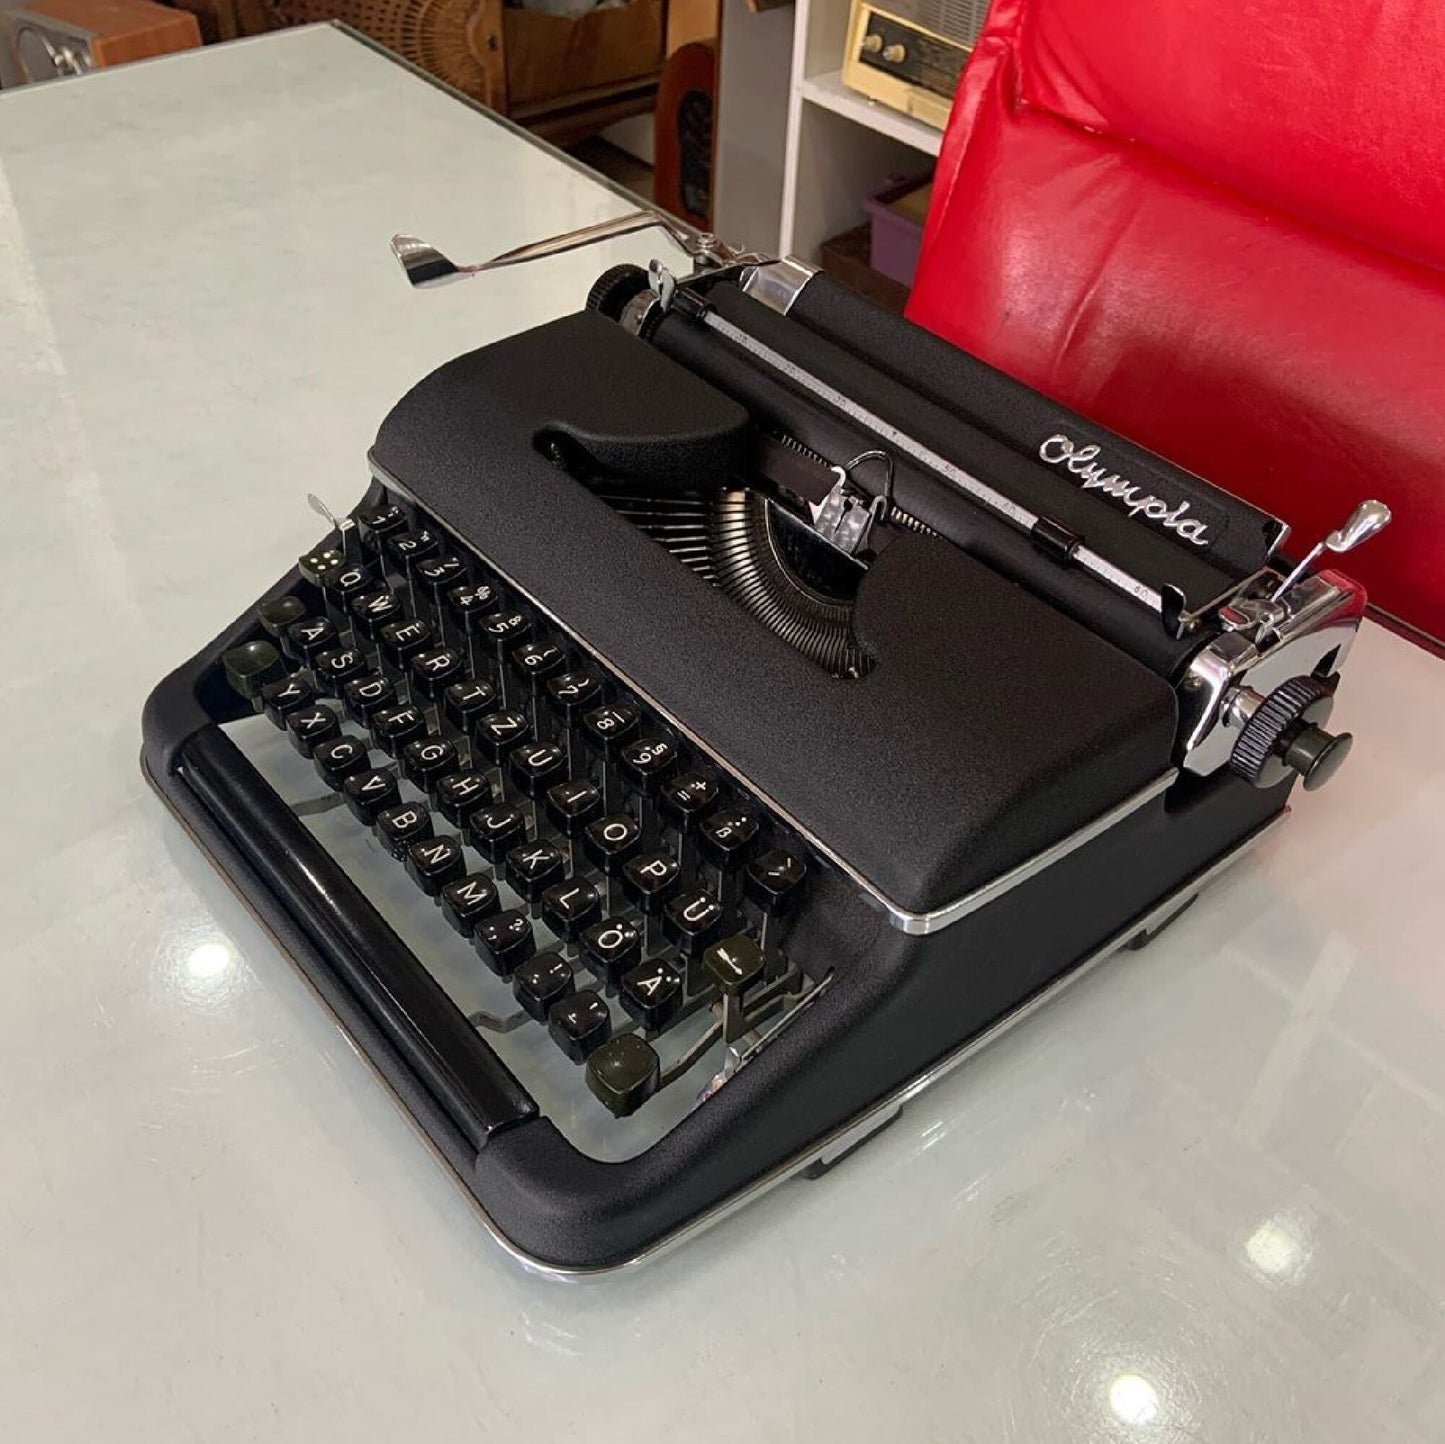 Olympia Sm2 Typewriter | Typewriter like new,typewriter working